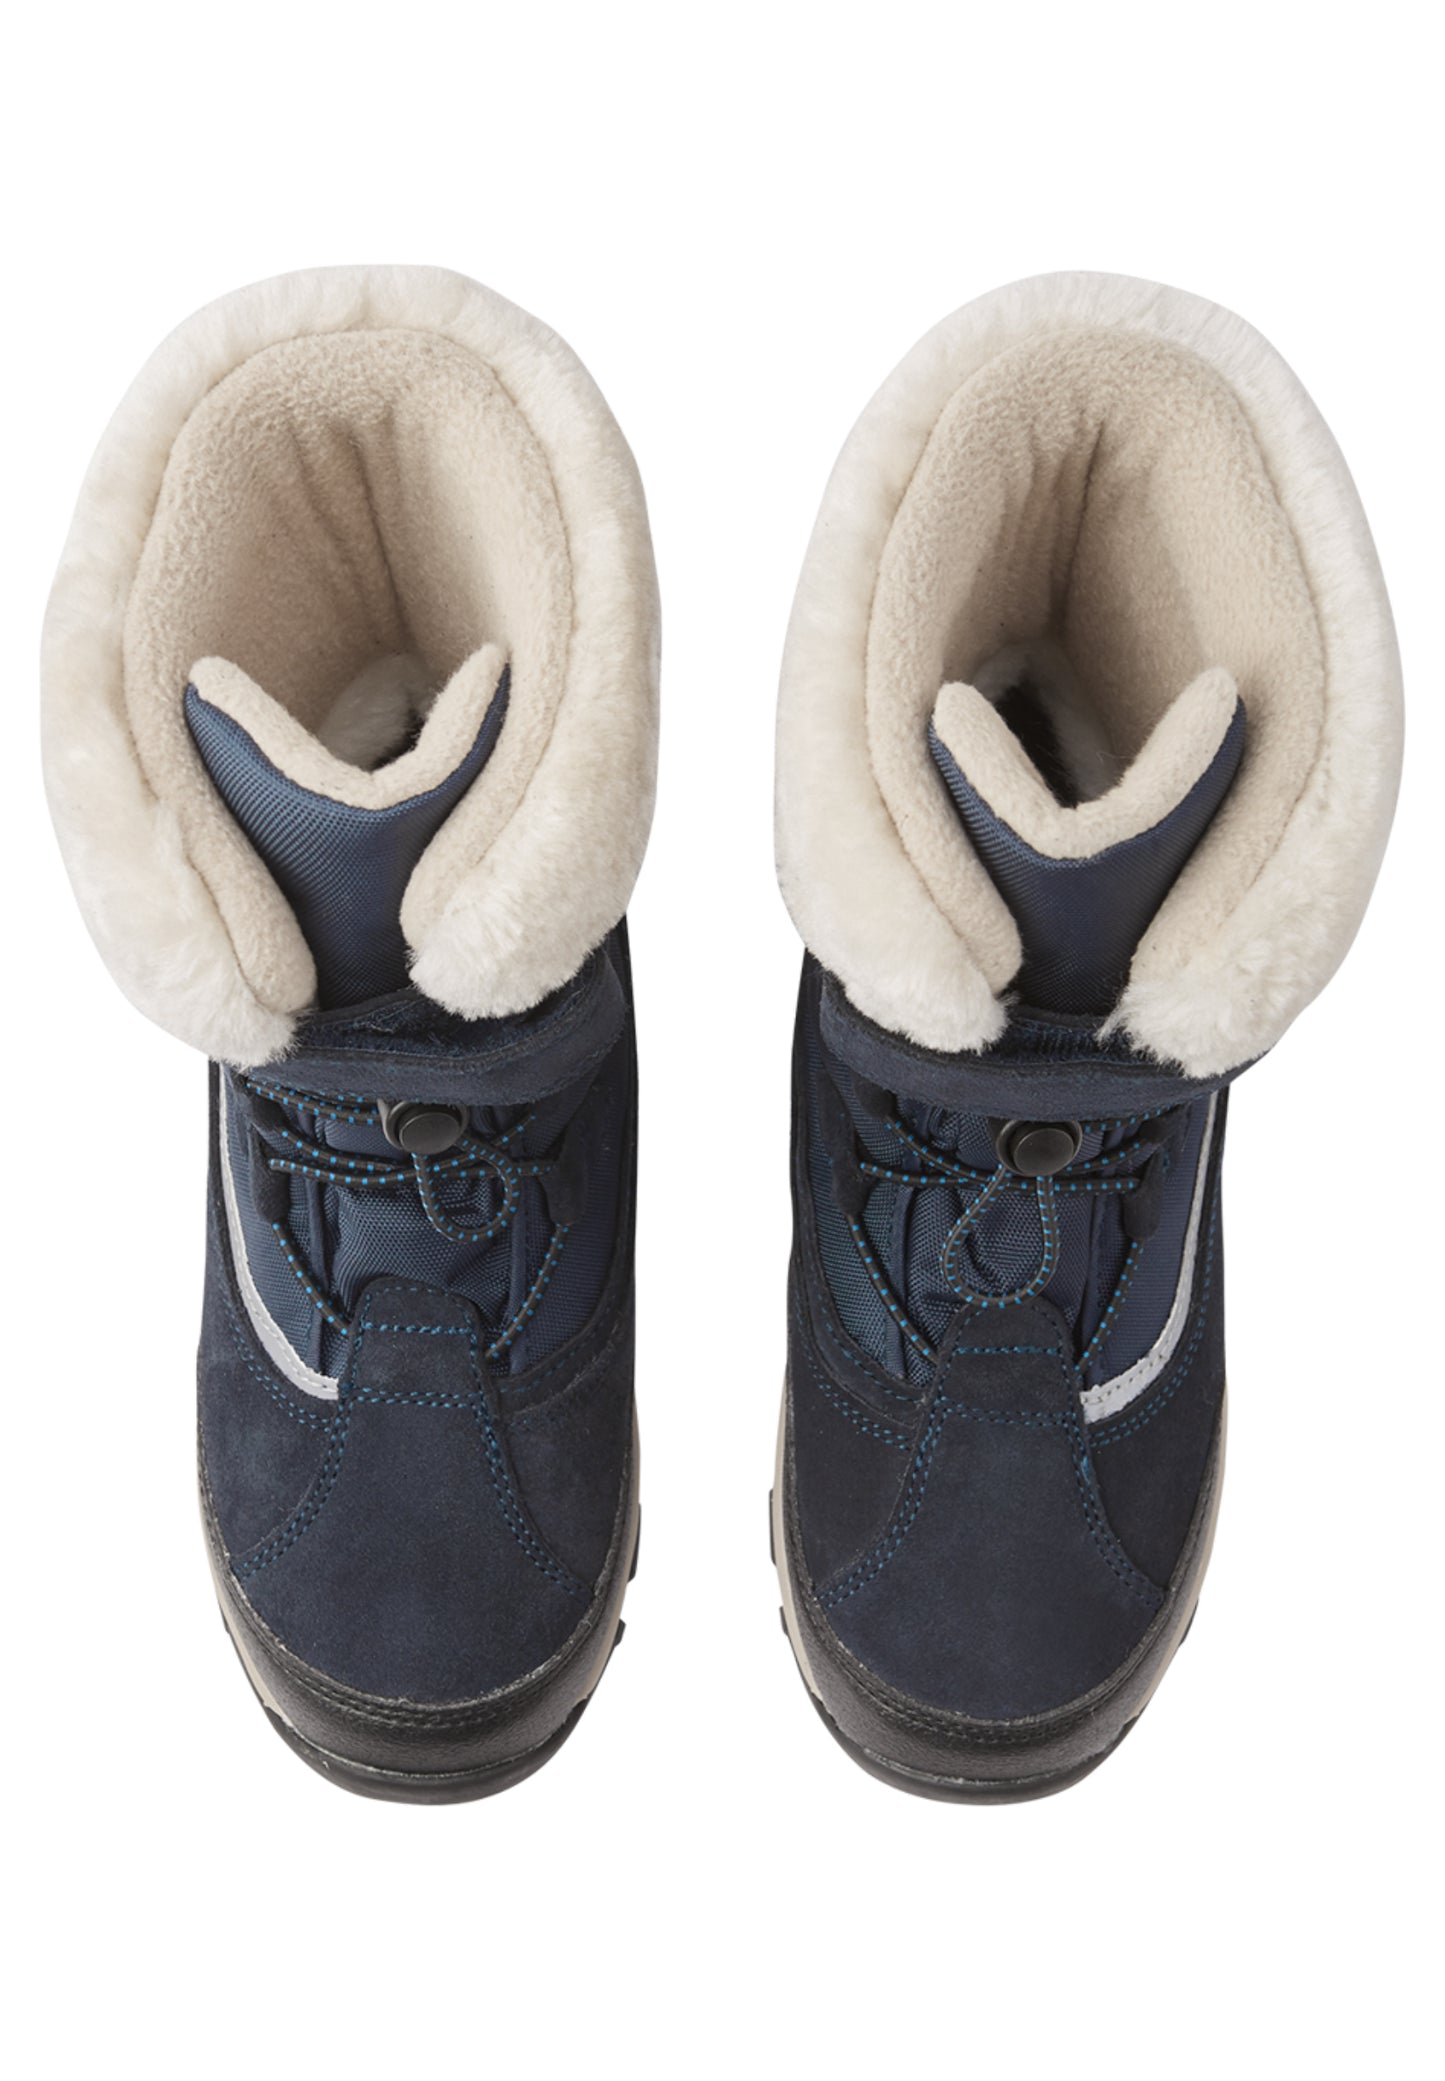 Reima TEC Winter-Stiefel <br>Samoyed <br> Gr. 25, 26, 27, 28, 31, 35, 36, 37, 38<br> Schule, Outdoor, Wald, Schnee<br>warm und leicht <br>kompletter Stiefel wasserdicht